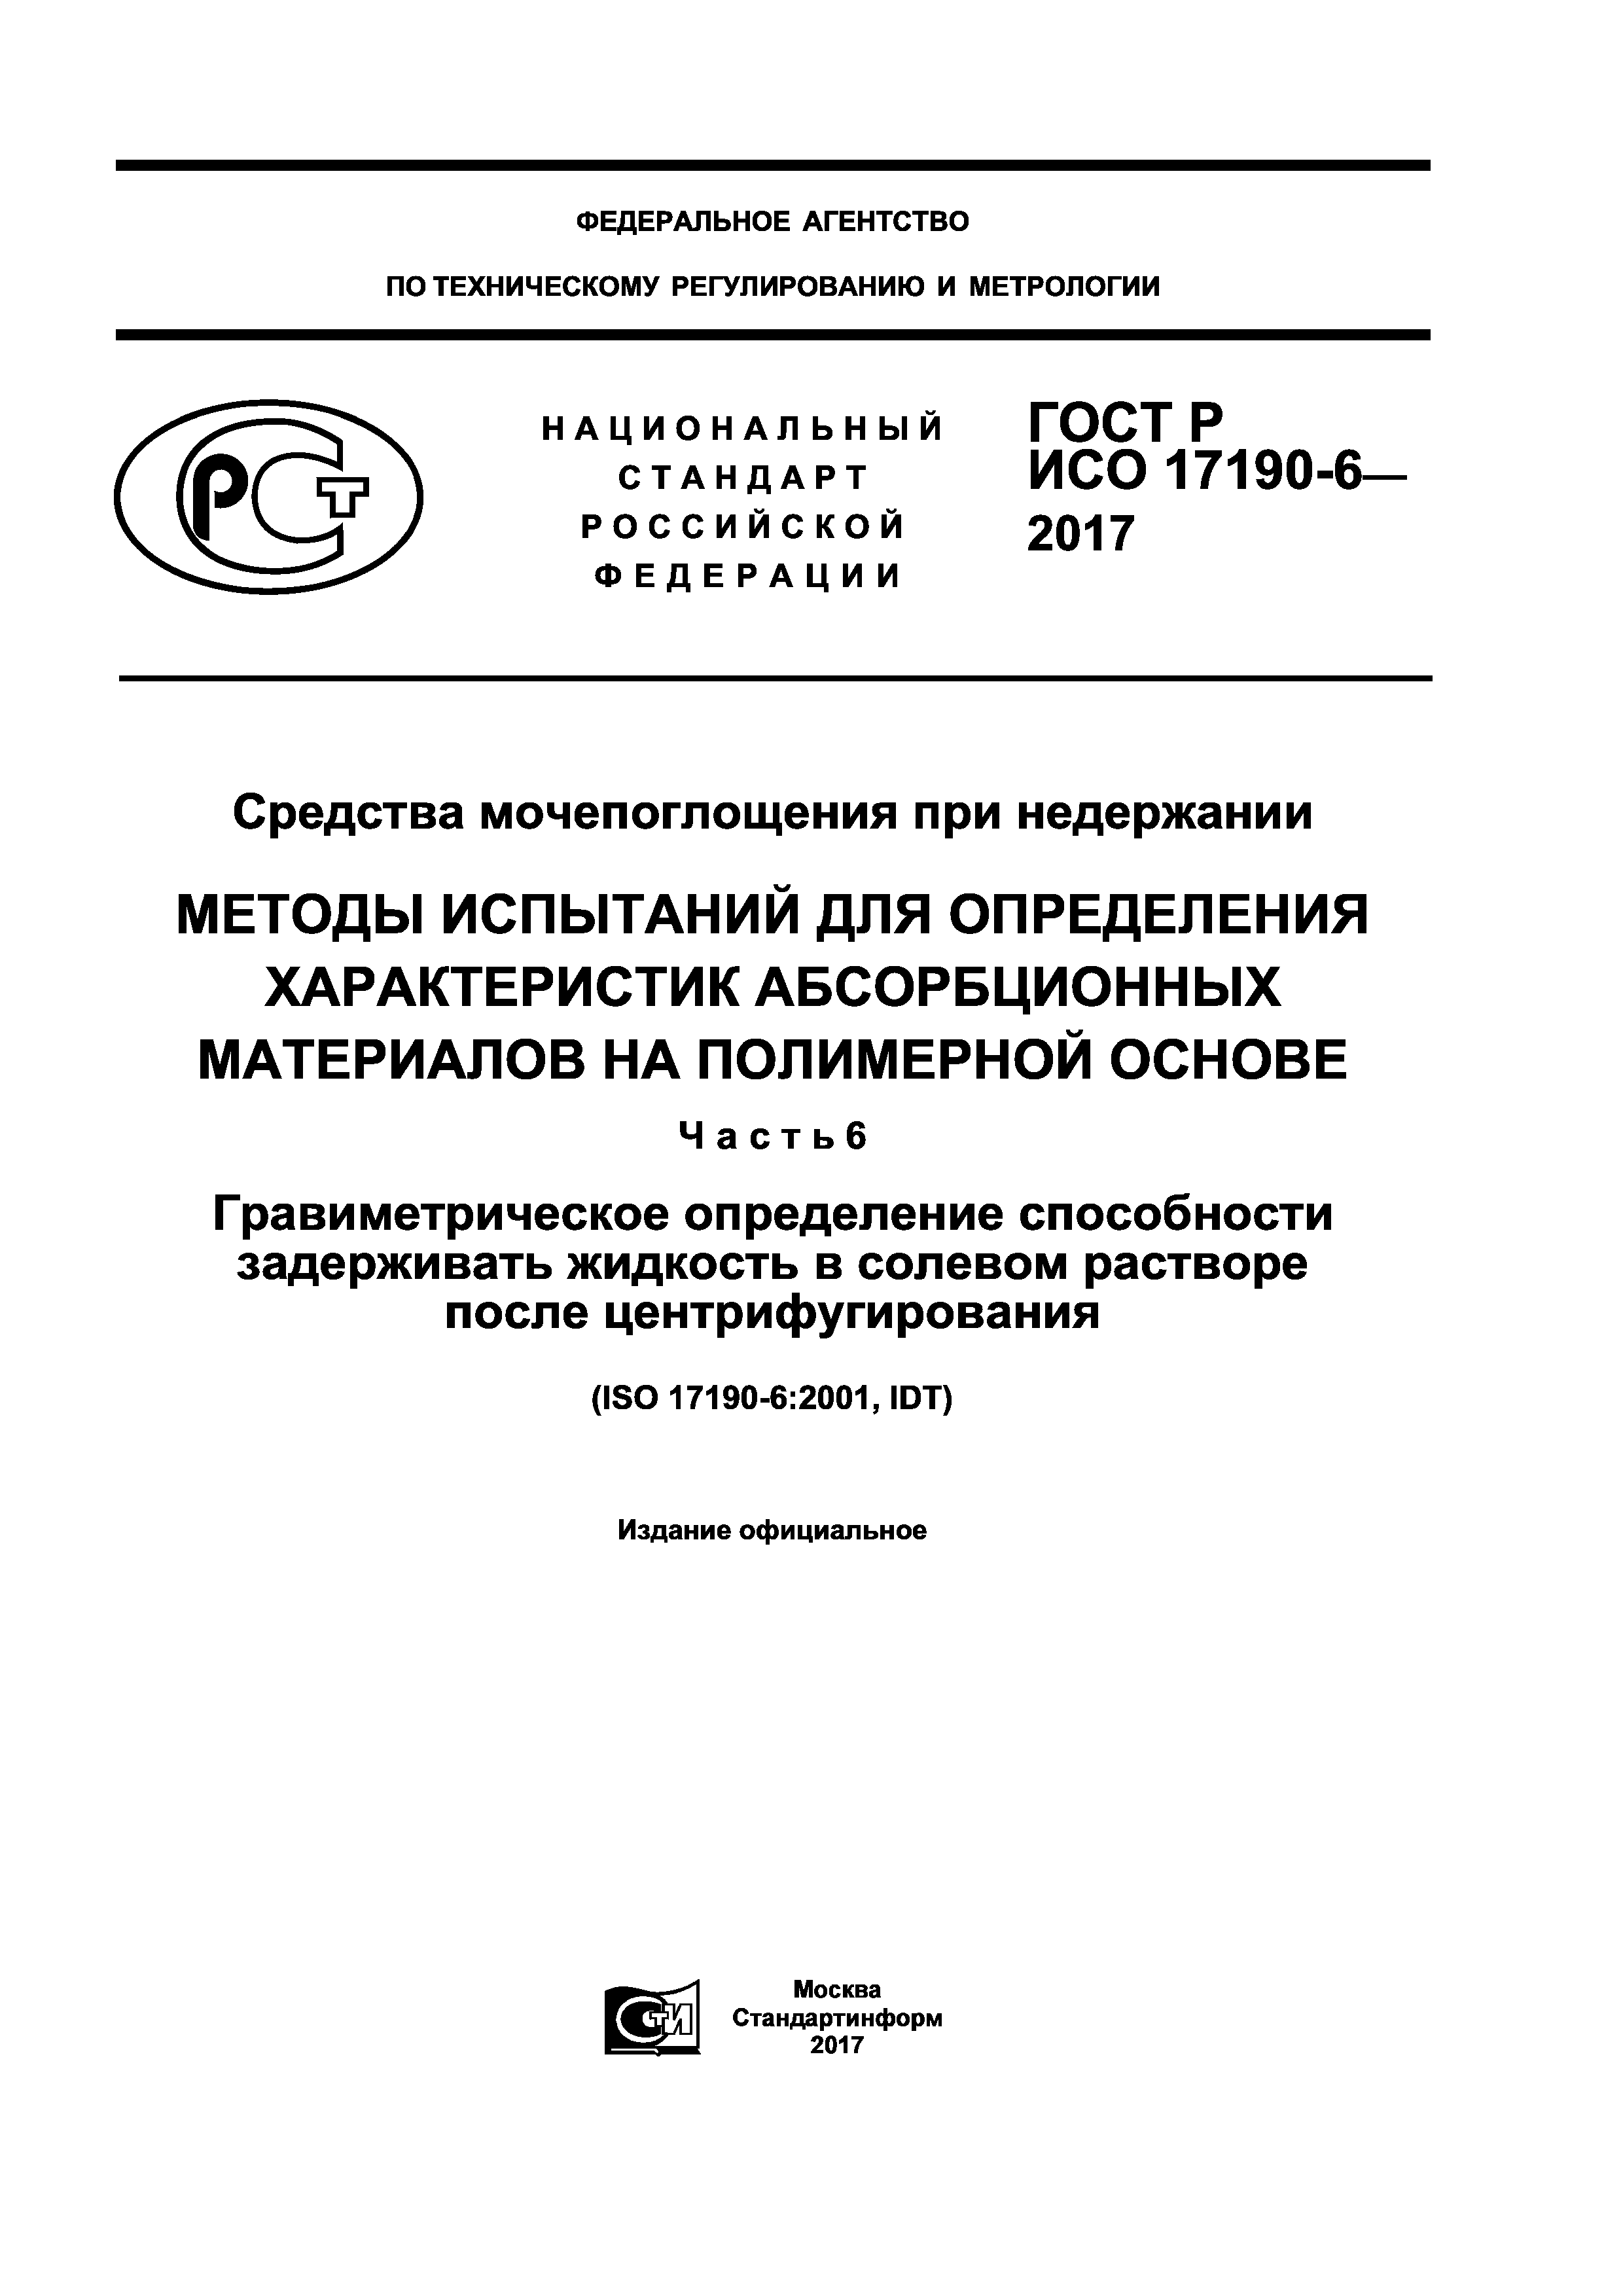 ГОСТ Р ИСО 17190-6-2017